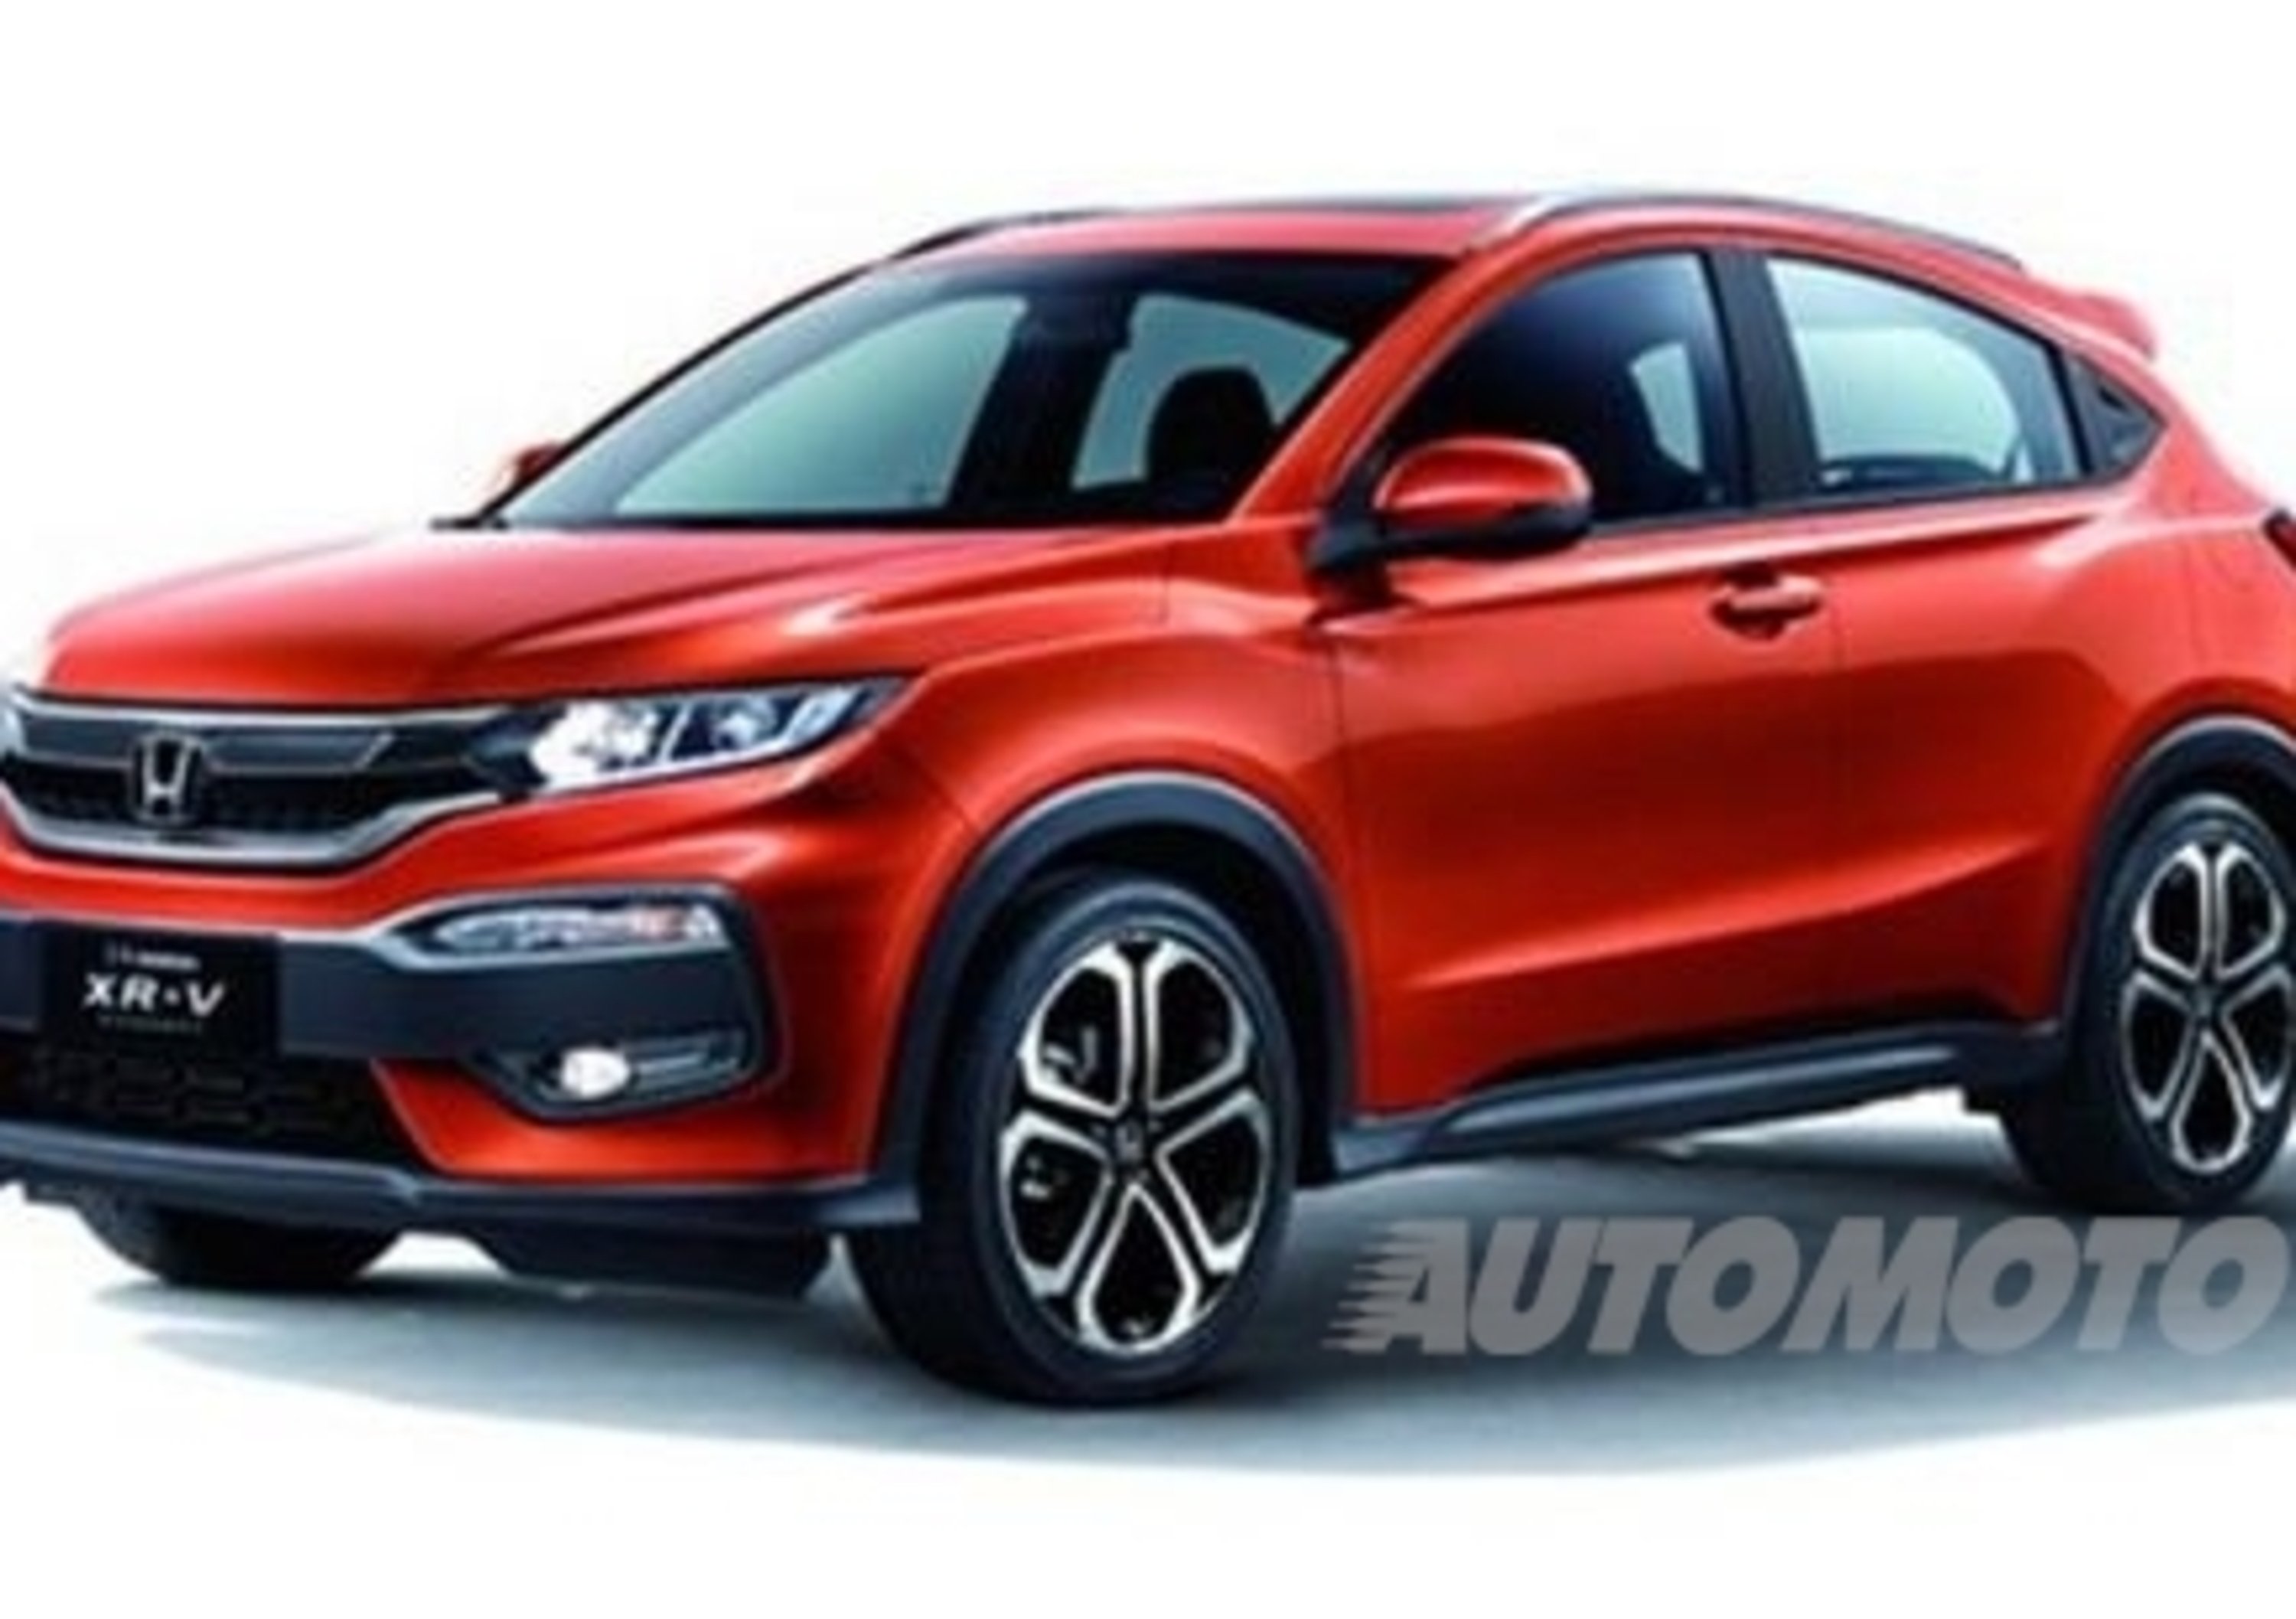 Honda XR-V: un crossover compatto per il mercato cinese